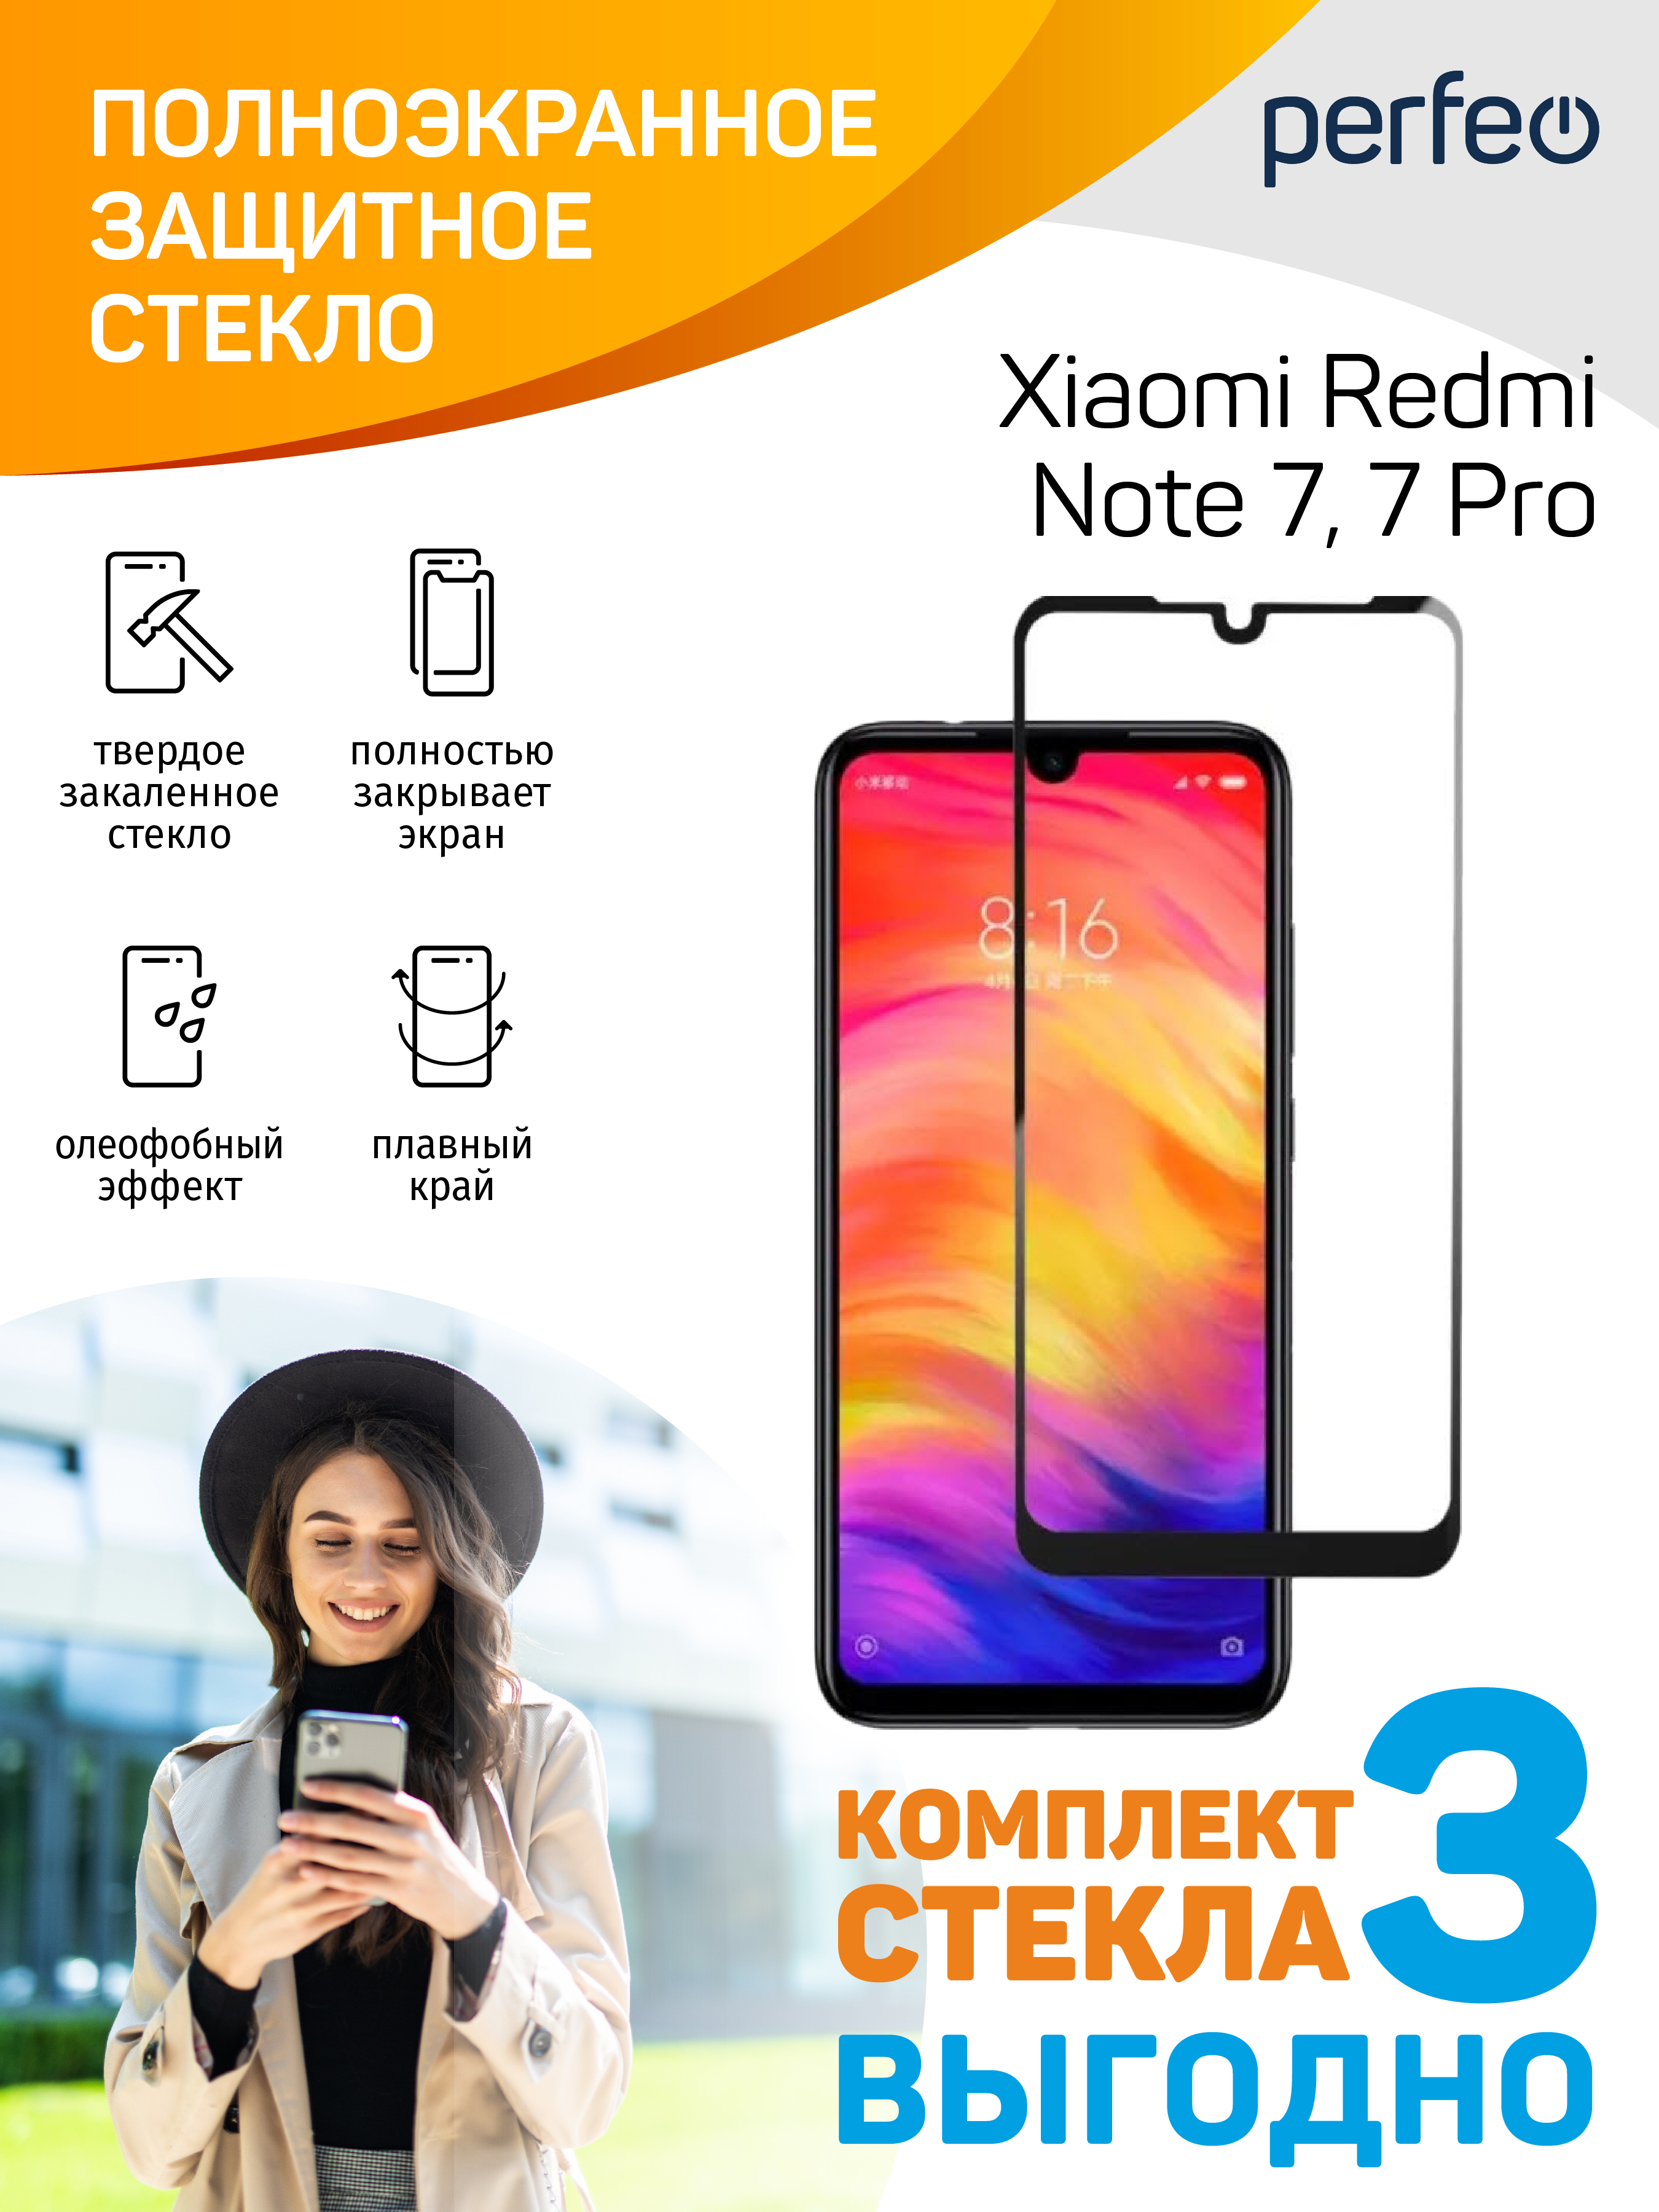 Redmi Note 8 Pro 64